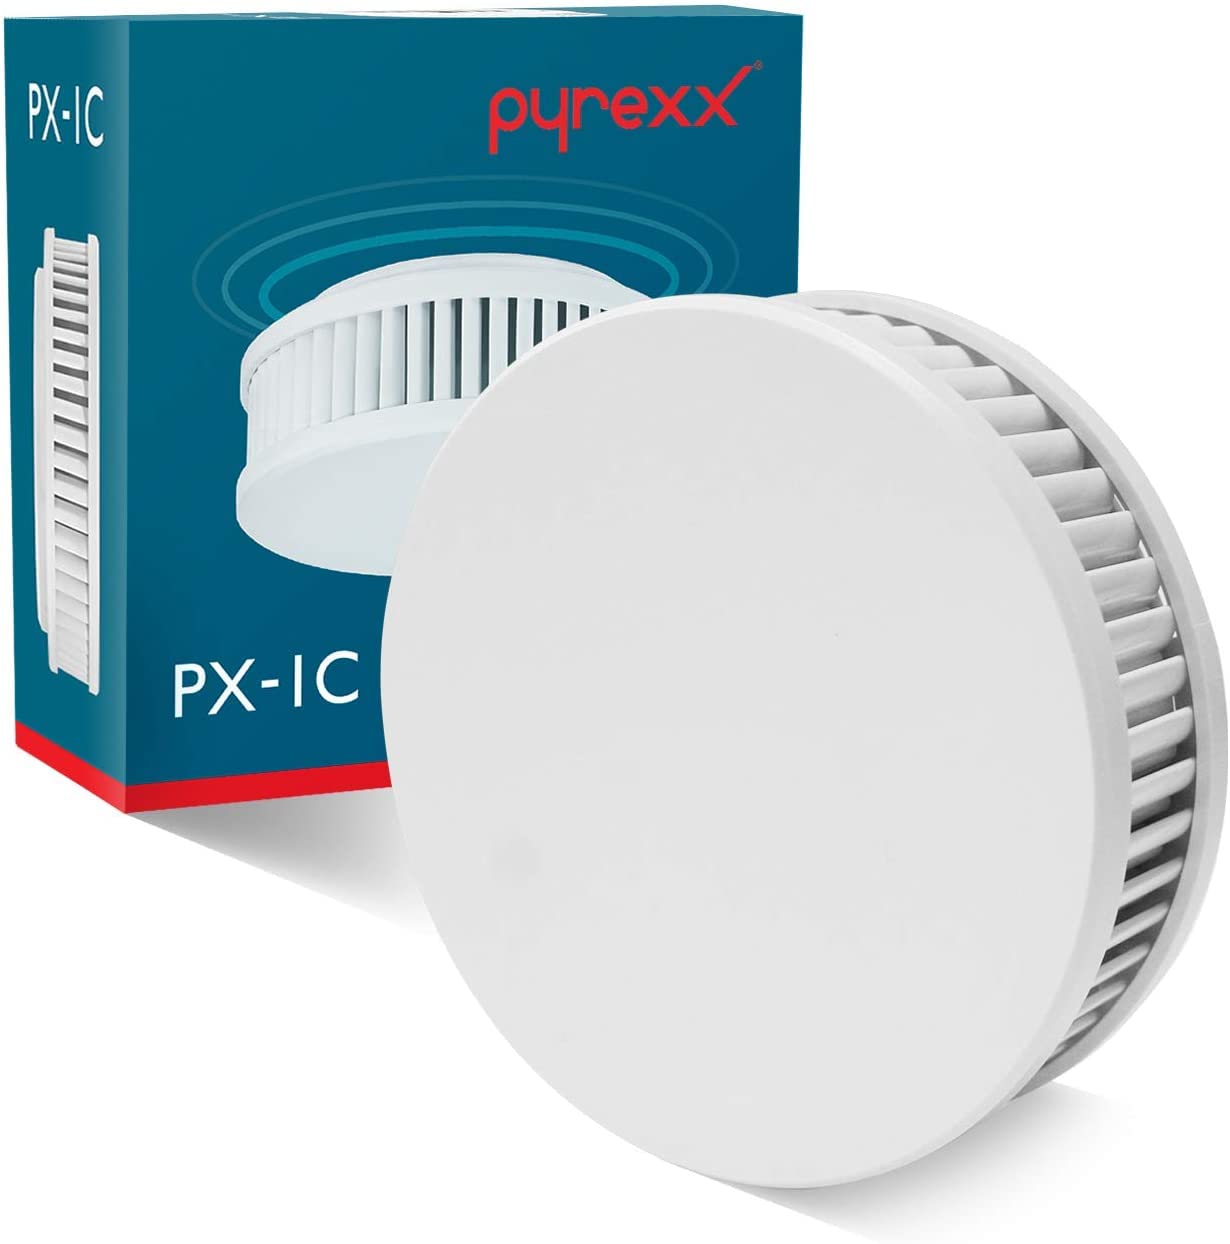 Pyrexx PX-1C Funk - 7er Set - Rauchwarnmelder 12 Jahre Batterie vernetzbar mit weiteren Meldern, Magnet-Halterung ohne Bohren und LED-Blinken, Zertifiziert nach Q-Label, Weiß,